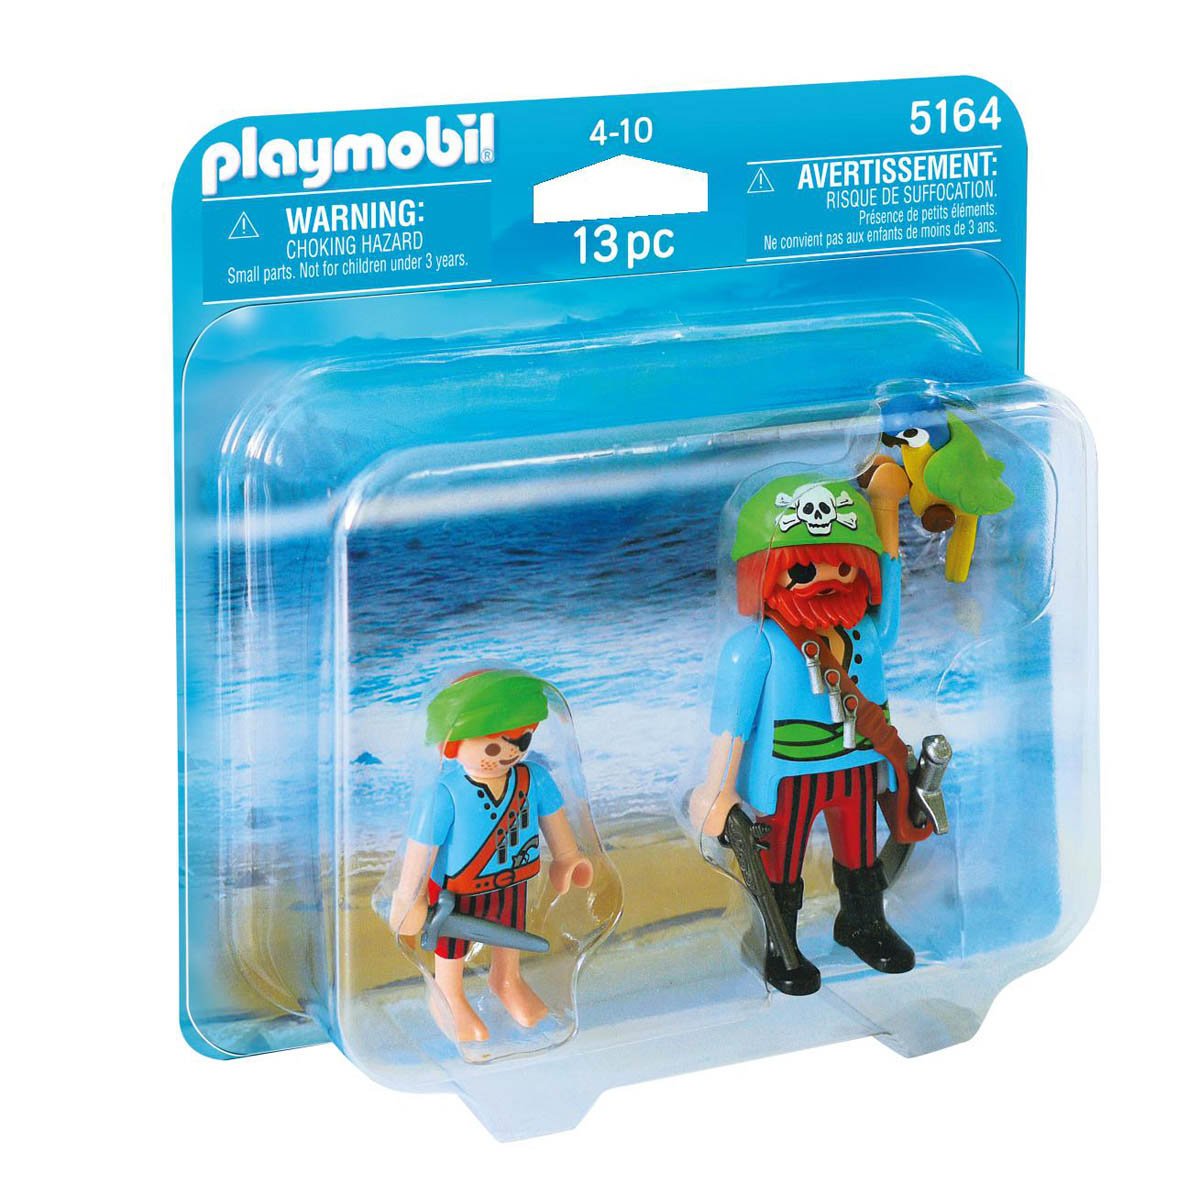 Duopack Piratas Playmobil